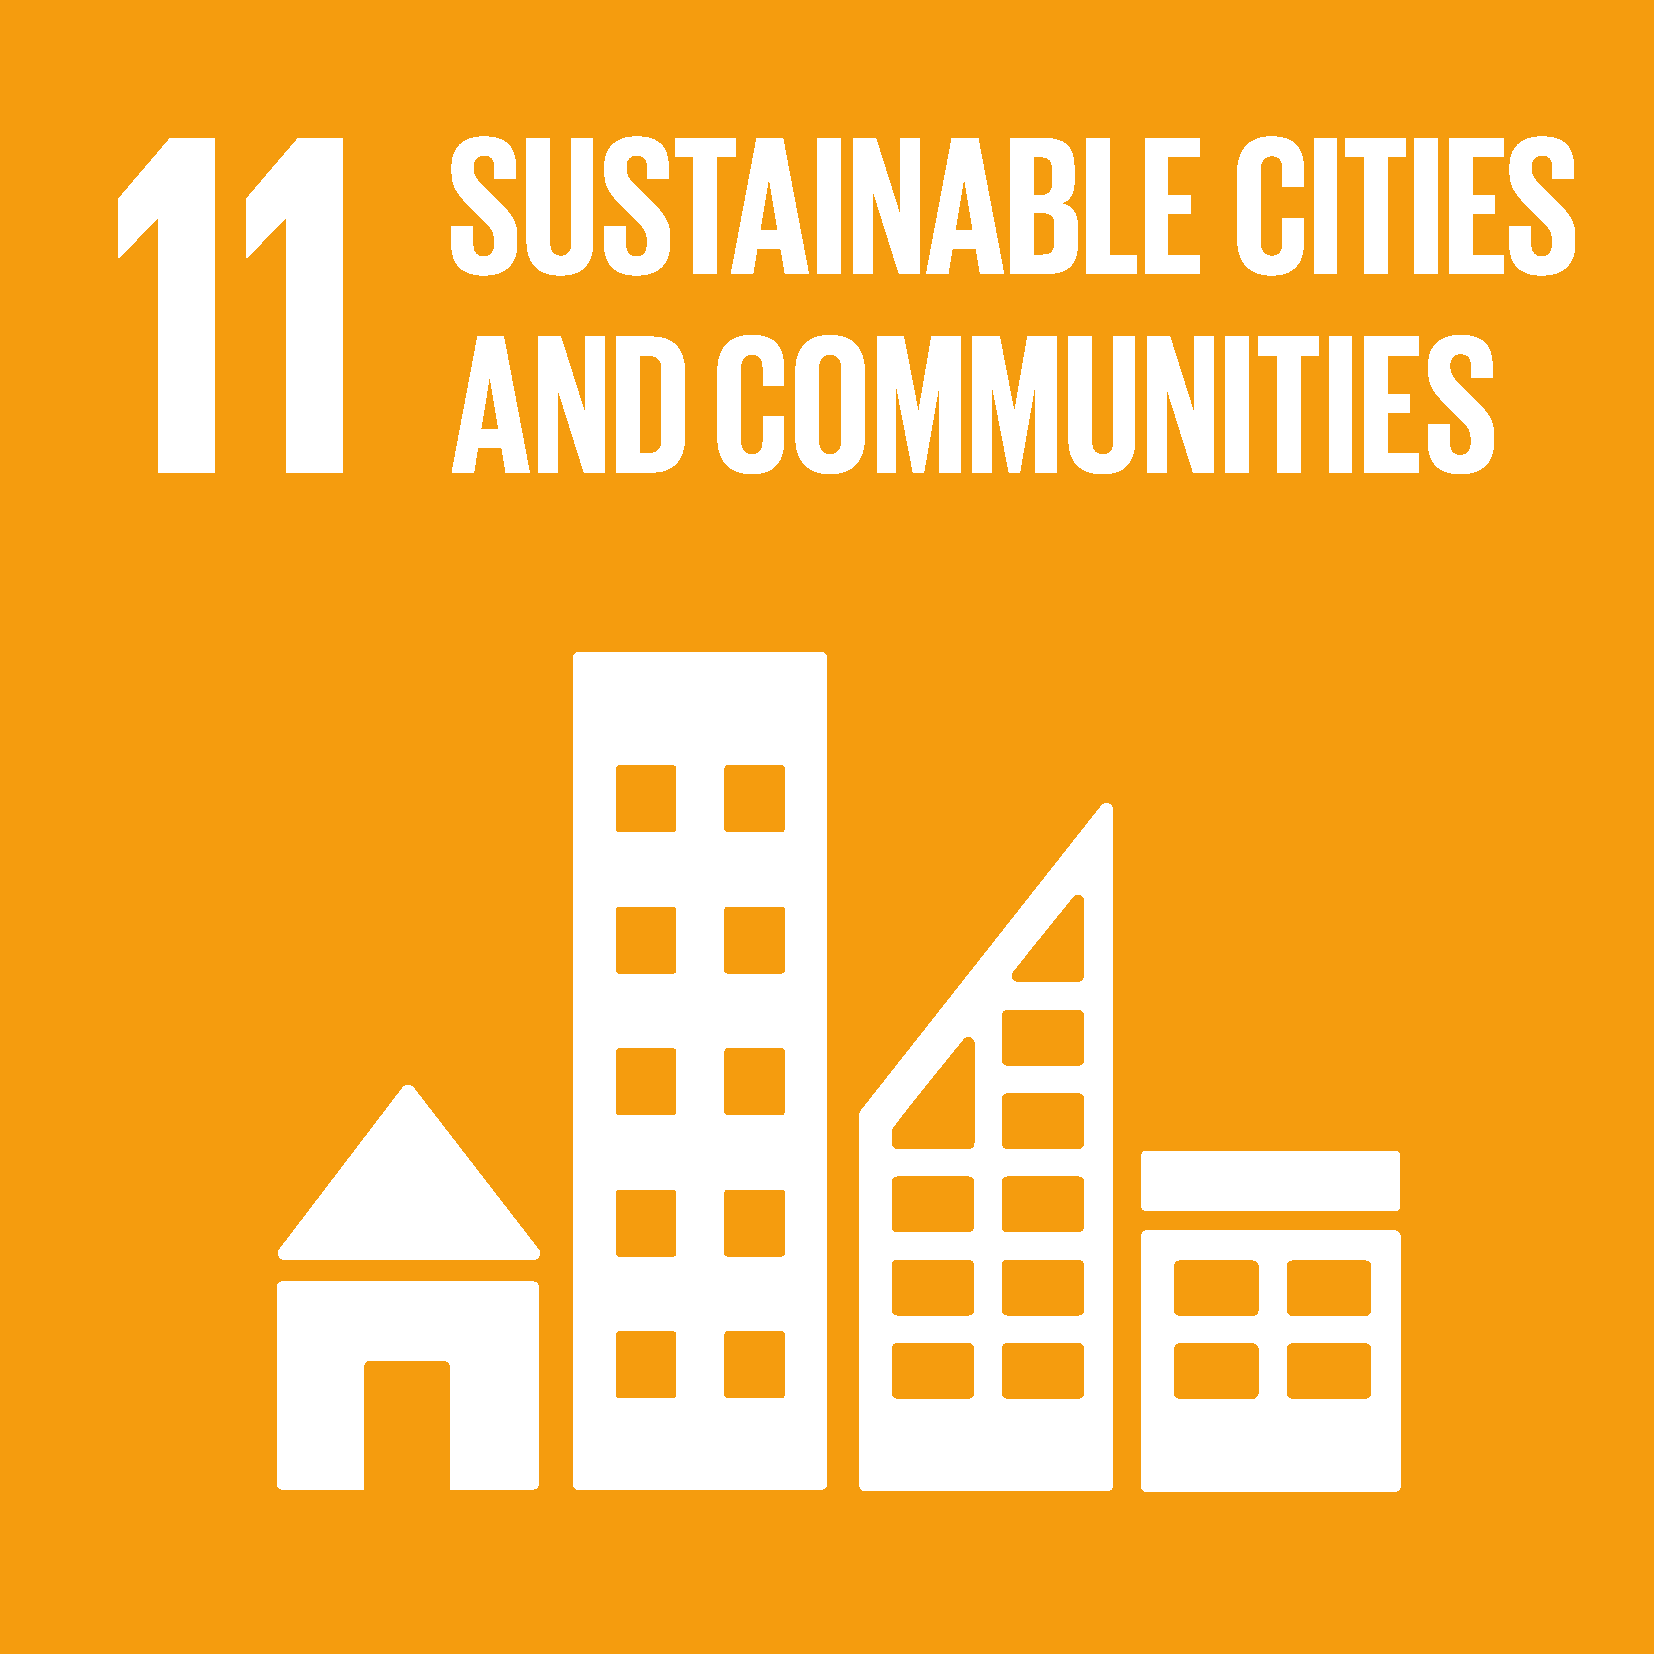 FN verdensmål 11 Bæredygtige byer og lokalsamfund